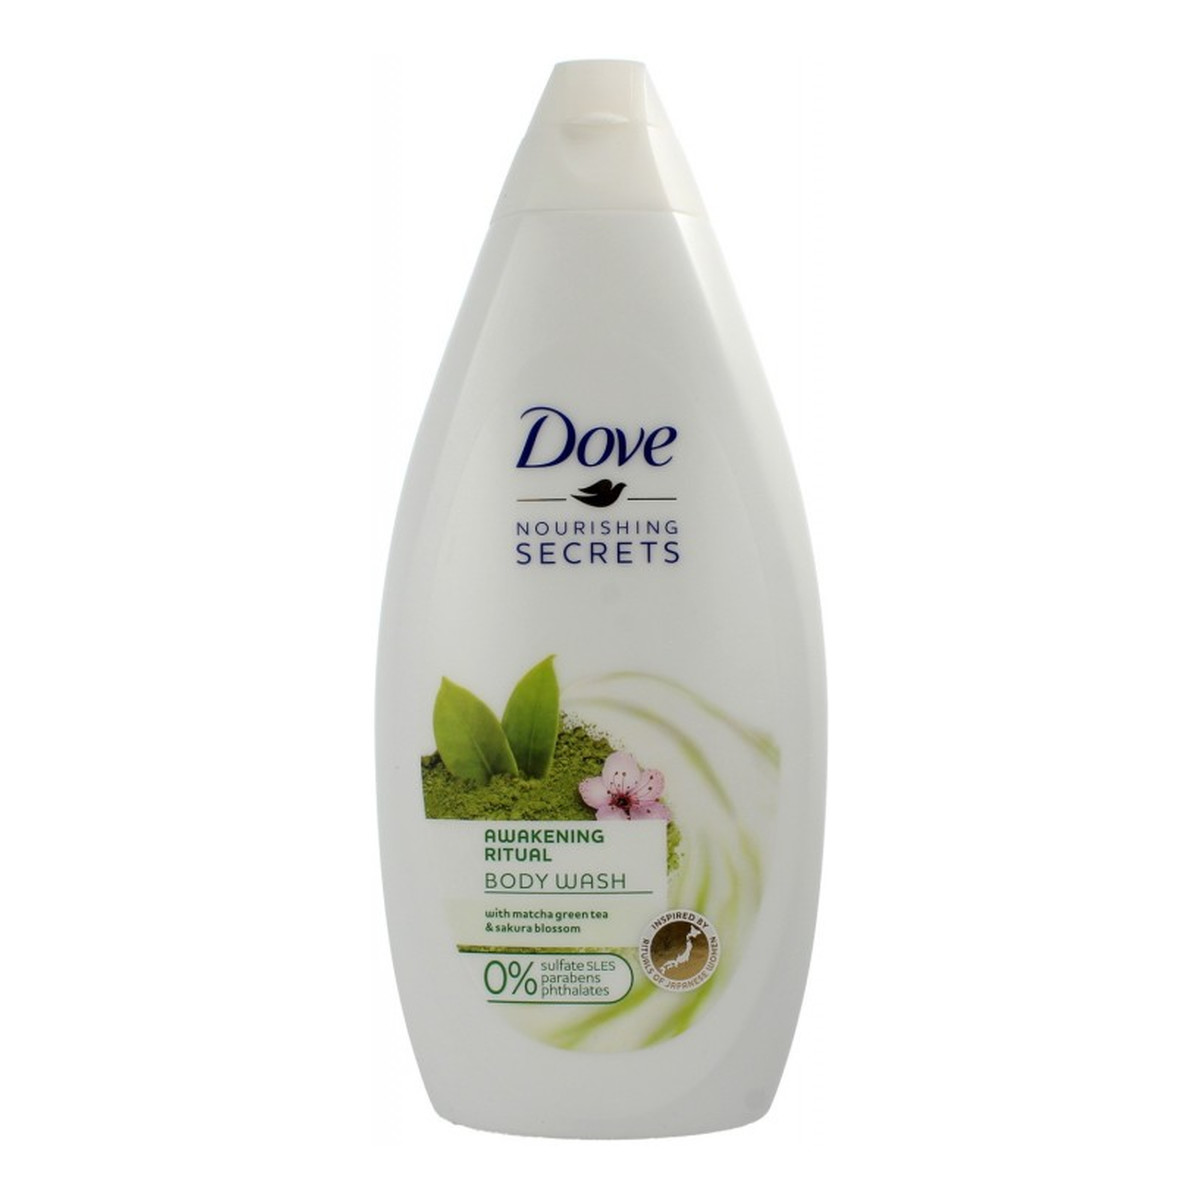 Dove Nourishing Secrets Awakening Ritual odświeżający żel pod prysznic Matcha Green Tea & Sakura Blossom 500ml